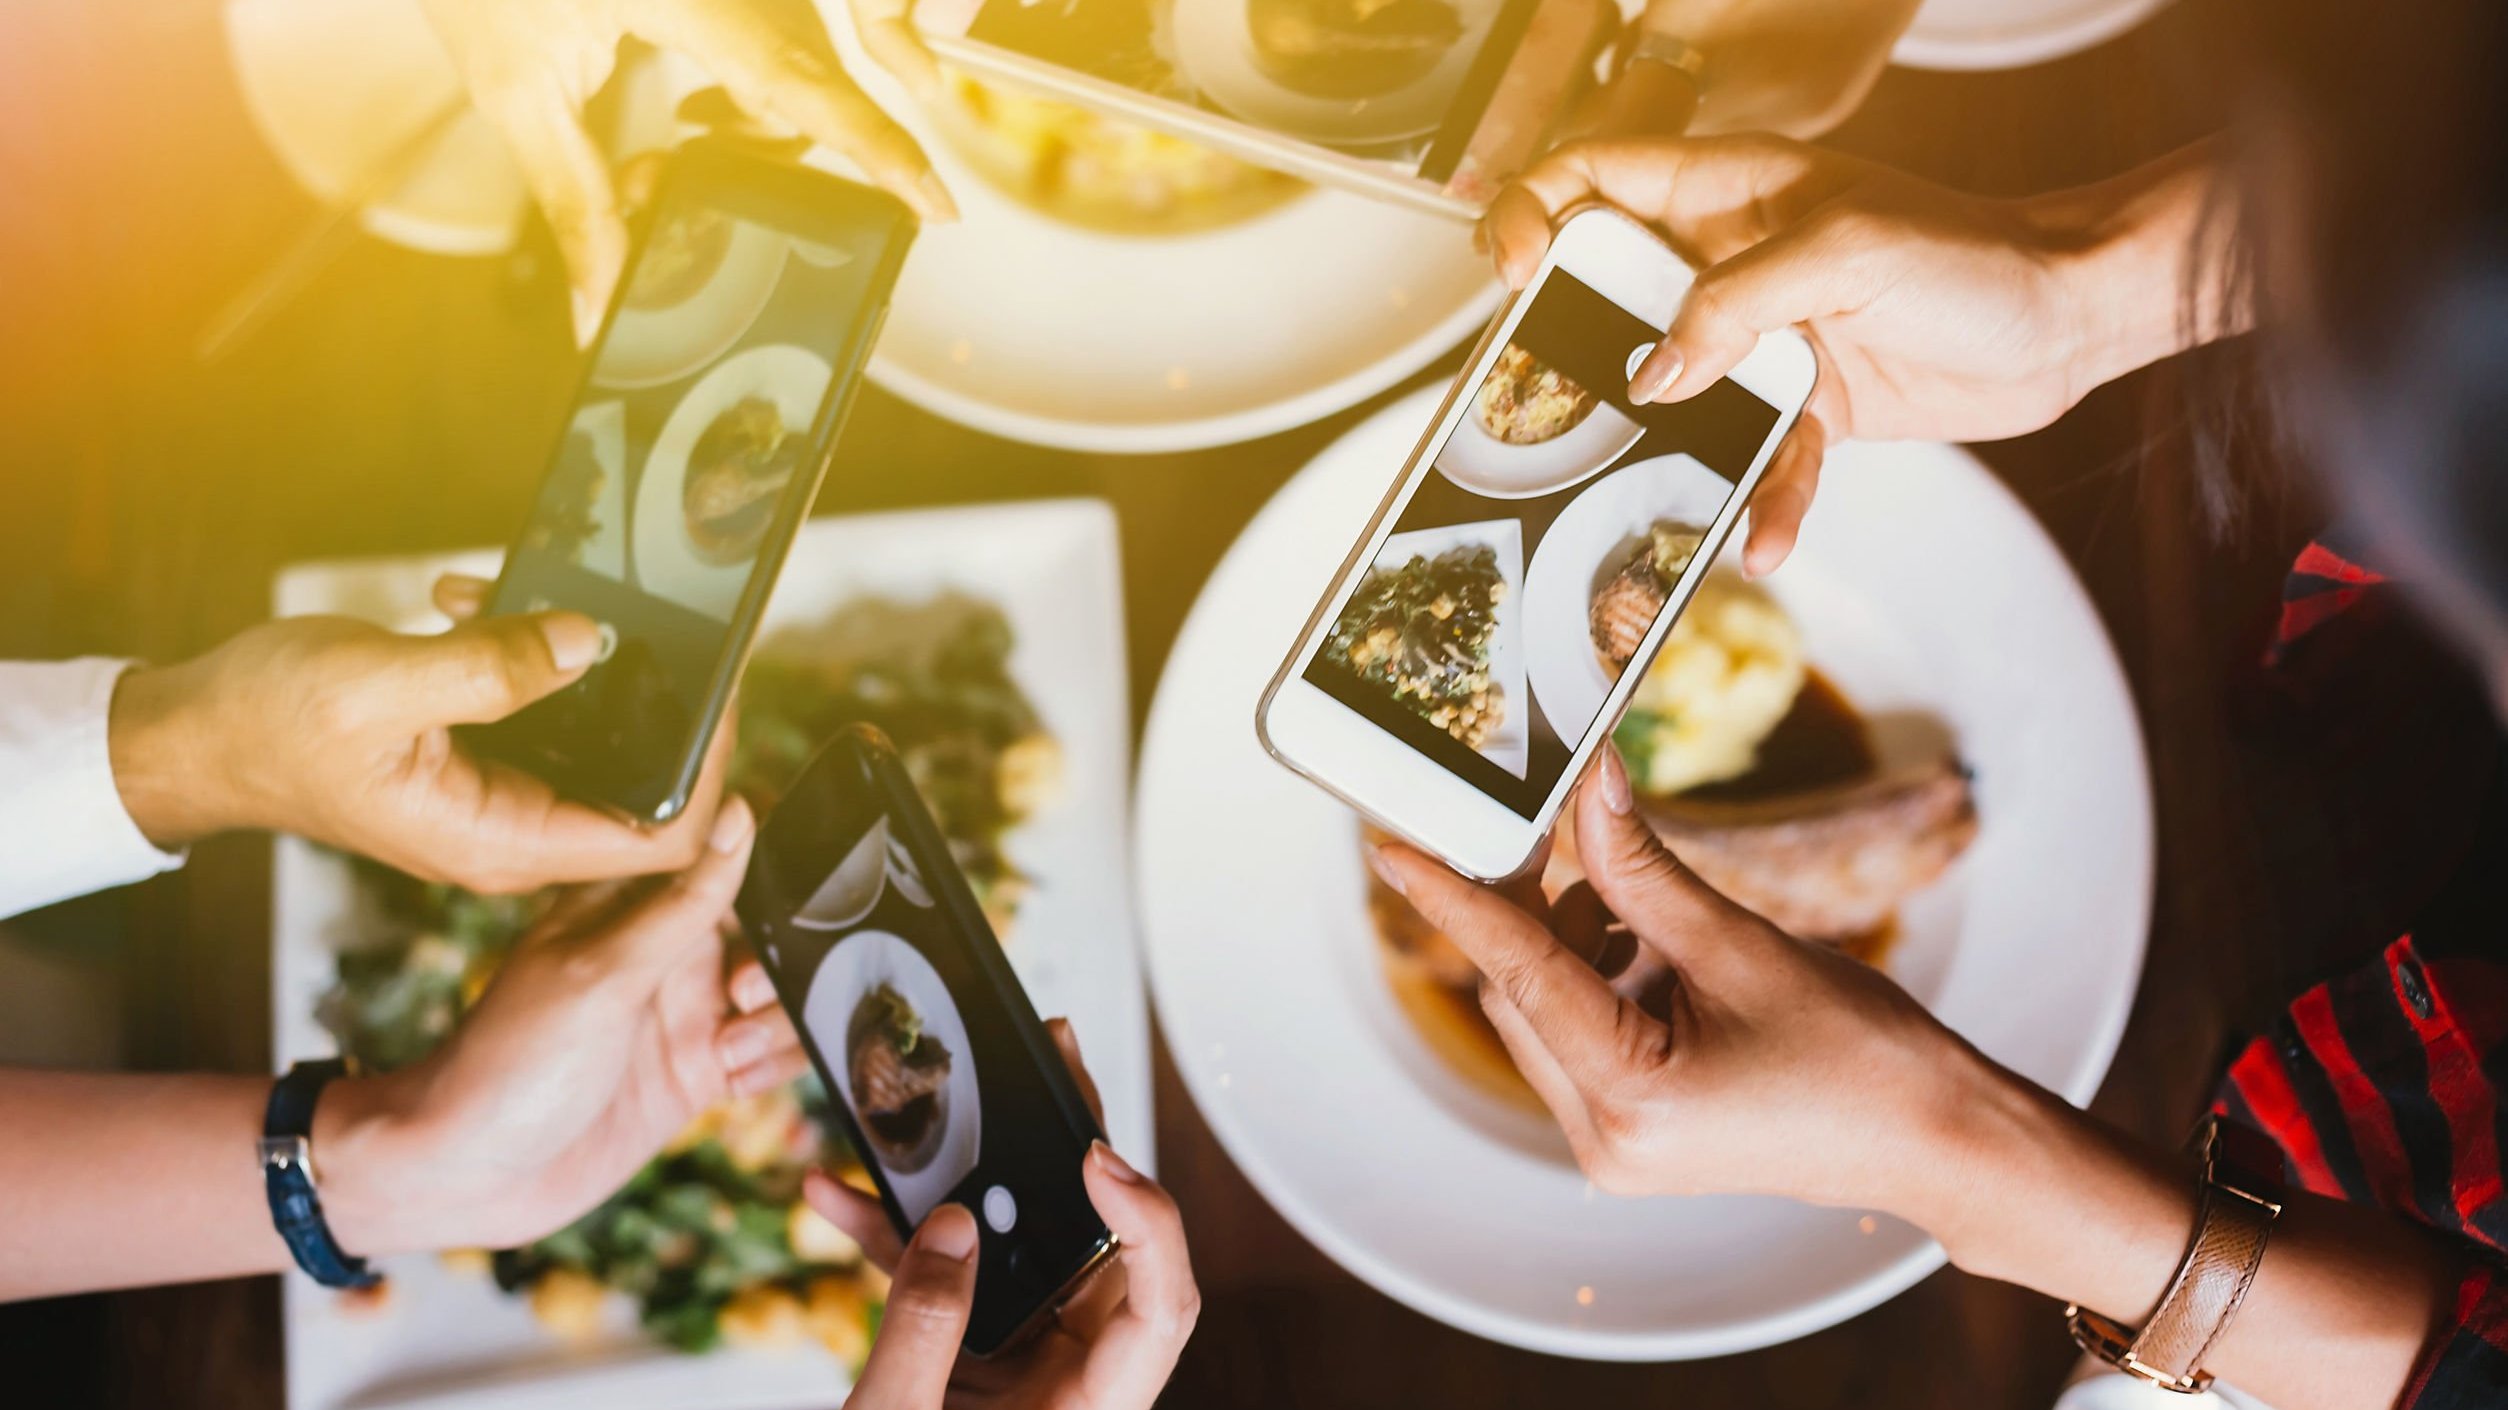 Mãos segurando celulares com câmeras ligadas apontando para a comida na mesa.